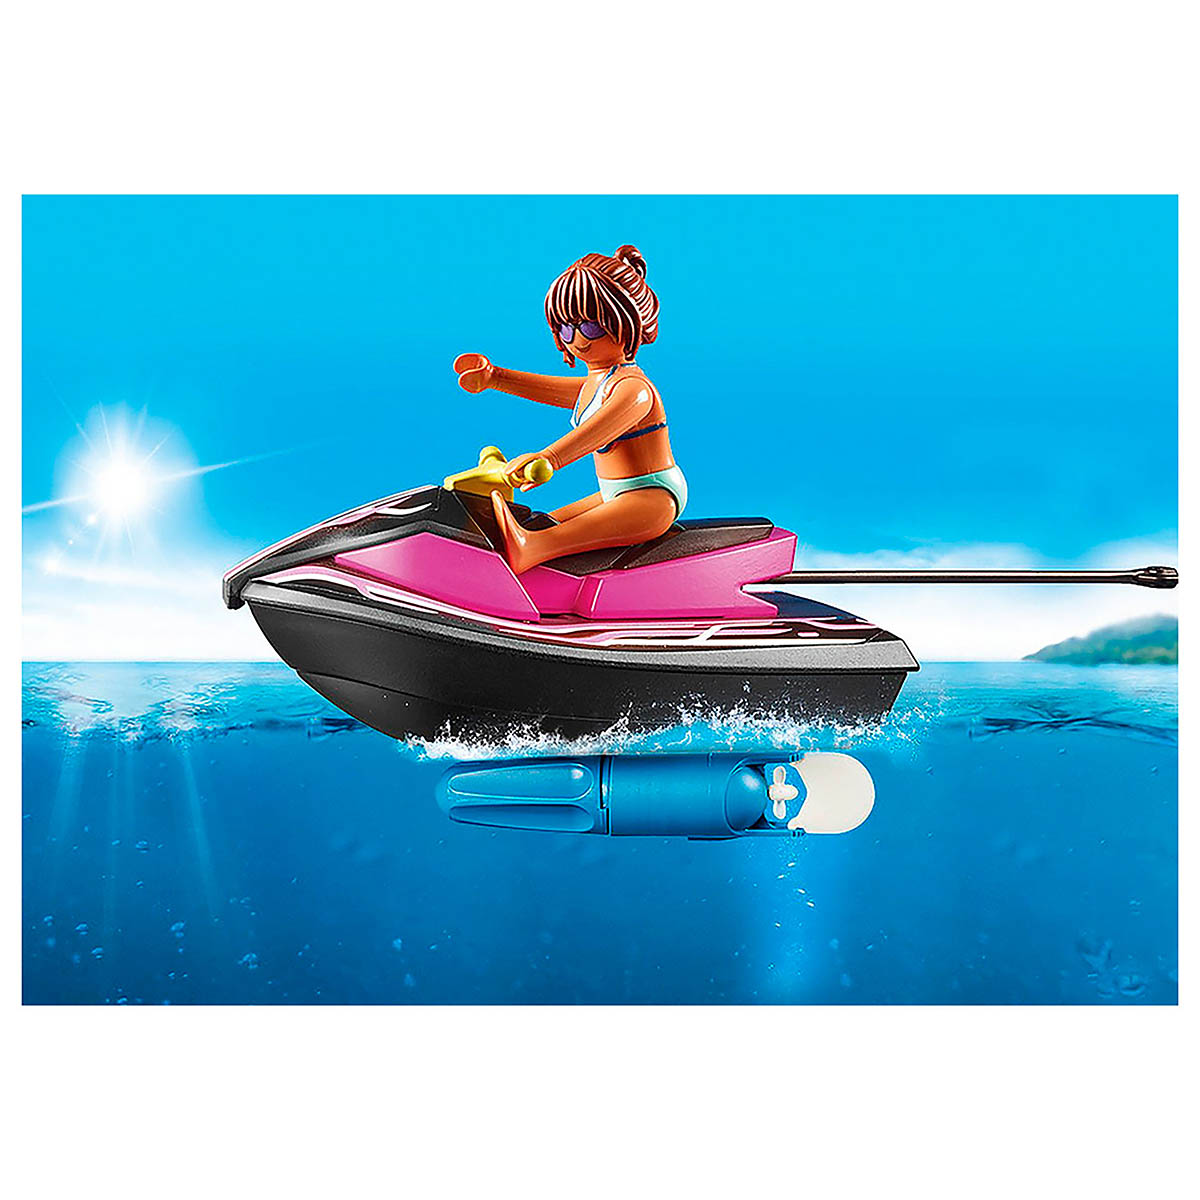 Playmobl Starterpack Jet Ski com Banana Boat - Sunny 2279